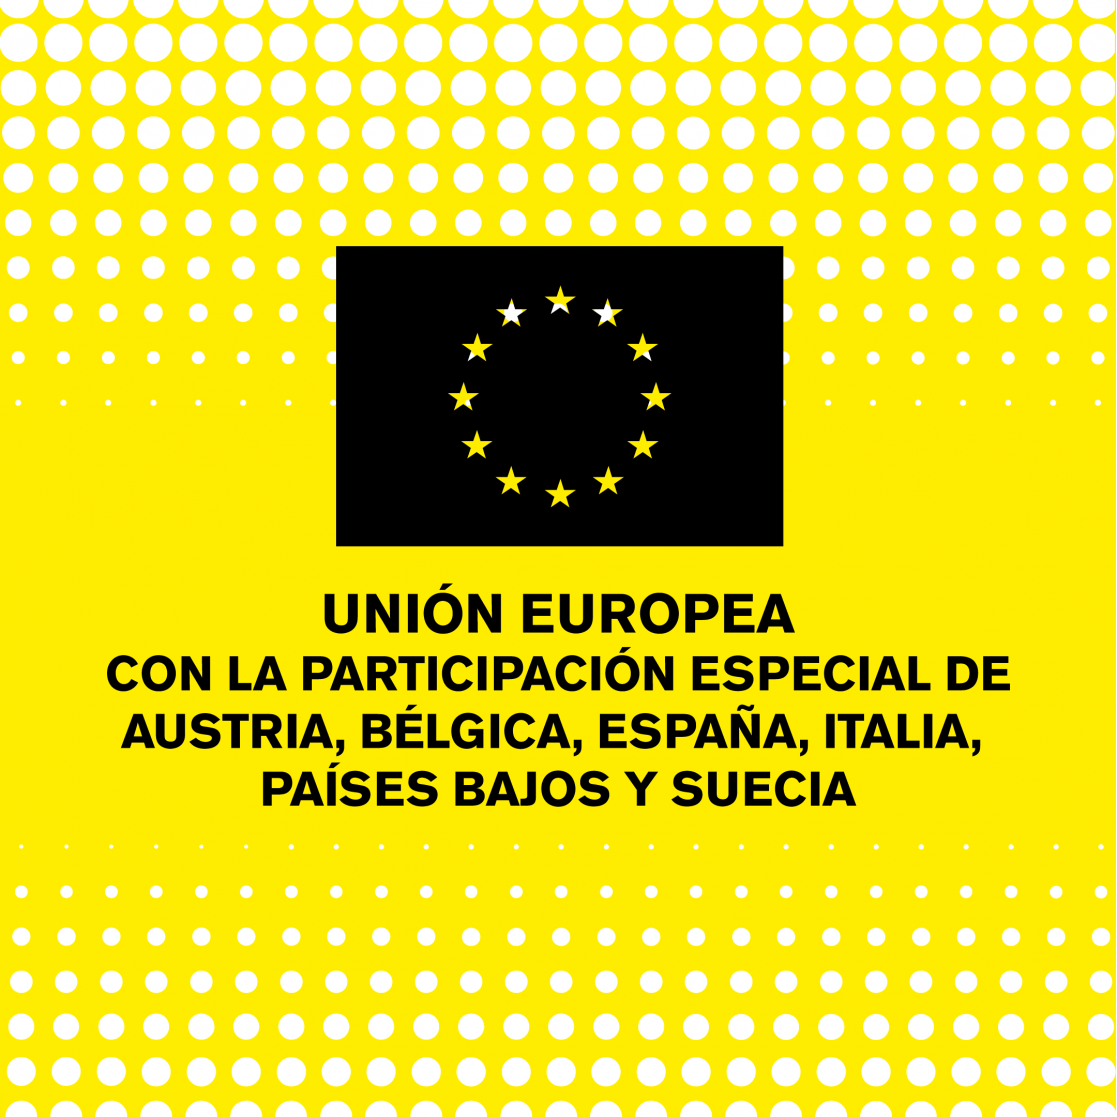 Yellow banner with the text "Unión Europea con la participación especial de Austria, Belgica, España, Italia, Países Bajos y Suecia"